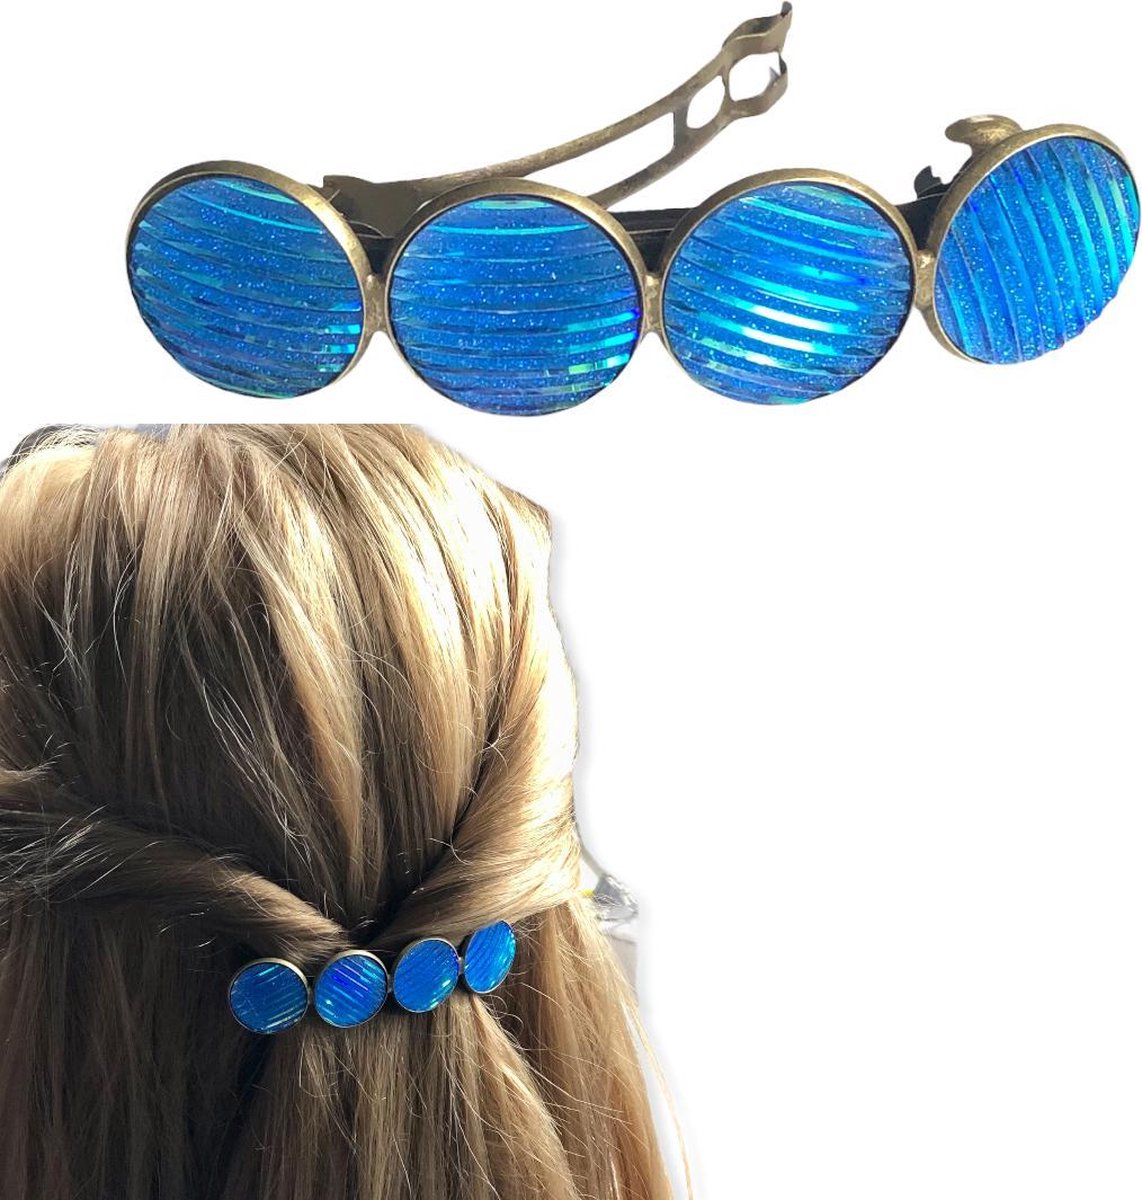 Hairpin-Haarspeld-Haaraccessoire-Hairclip-Cabochon-Blauw-Haarklem-Haarmode